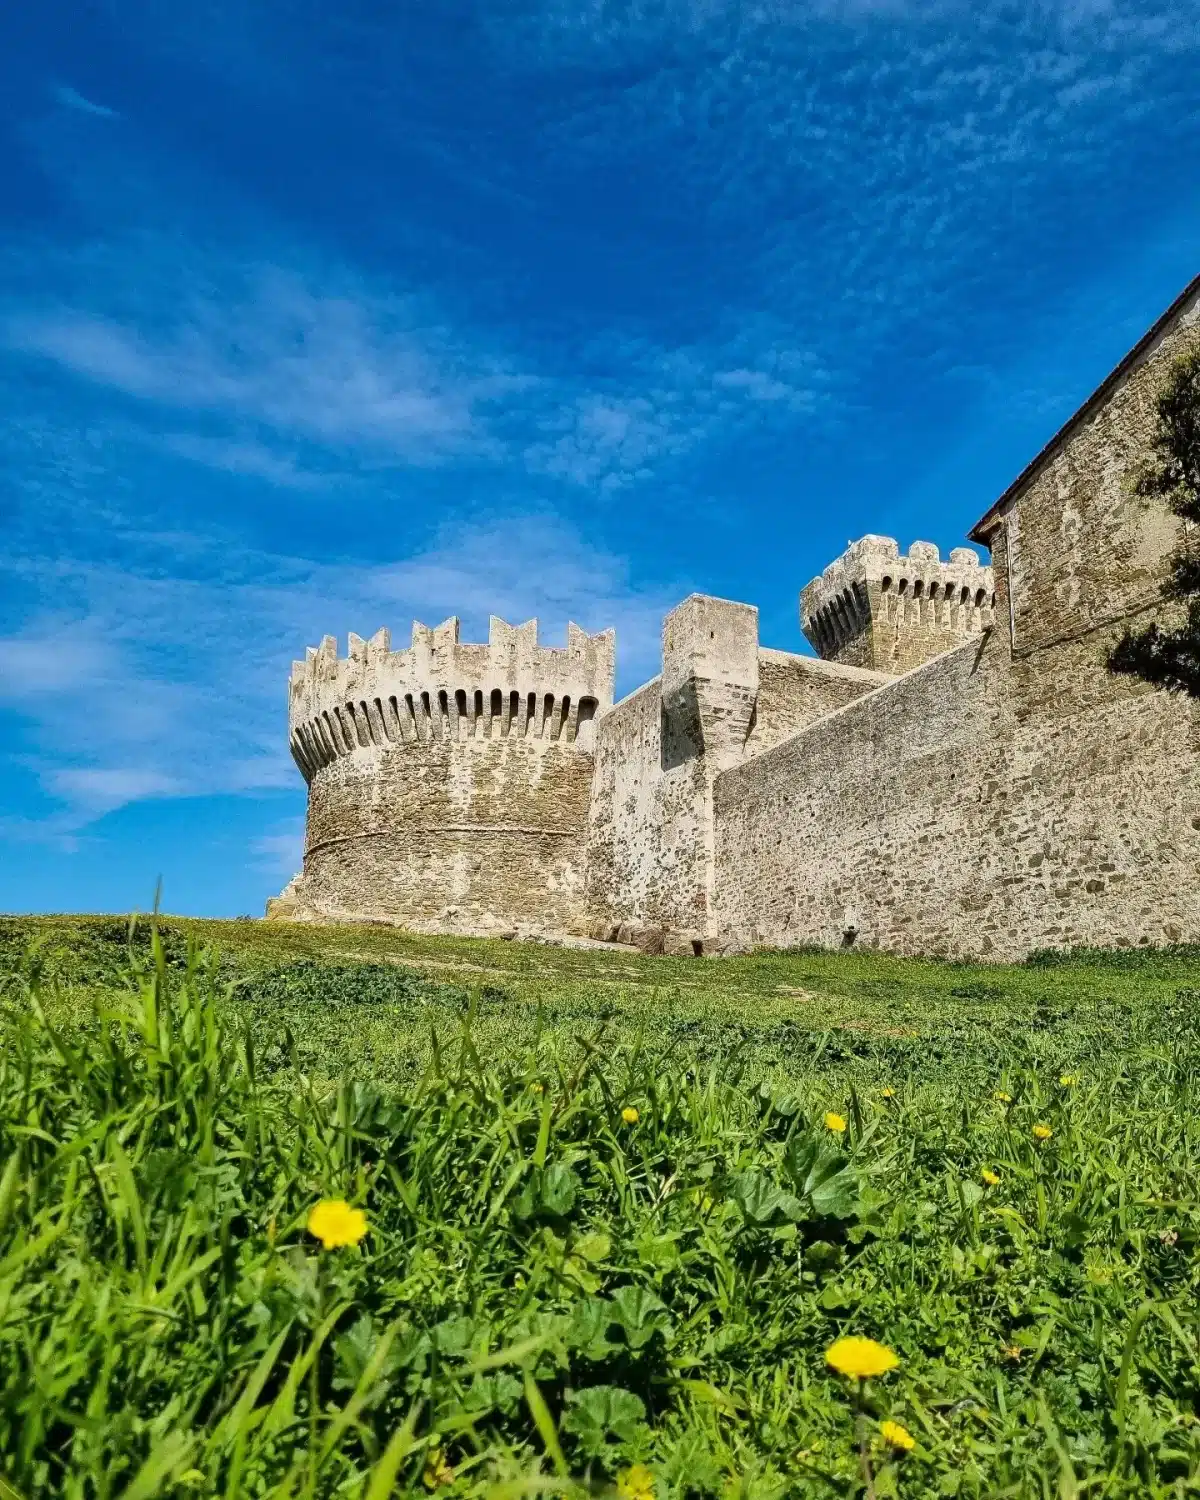 Rocca di Populonia